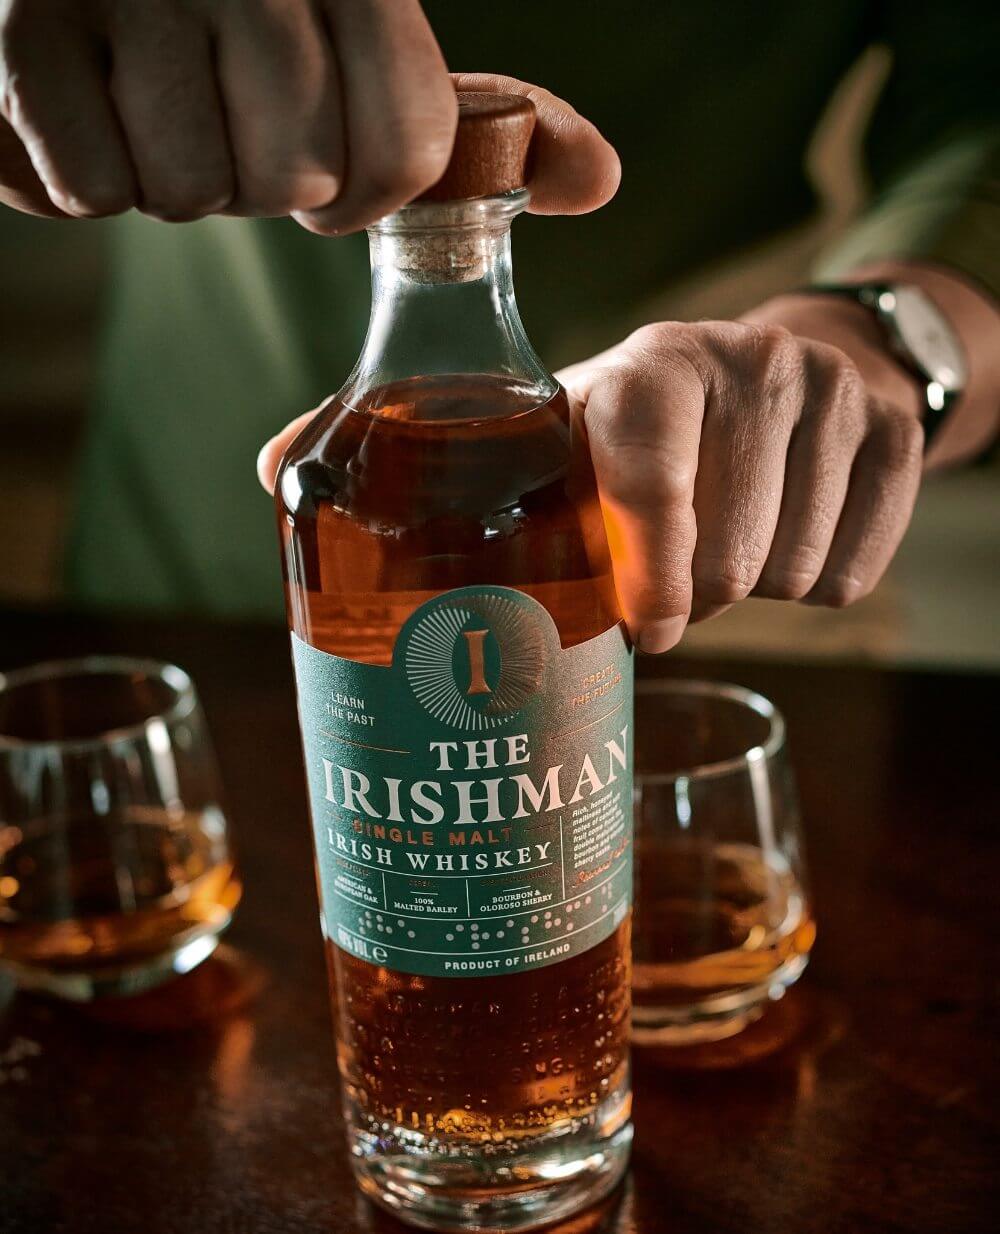 Bottle of Irishman whiskey.